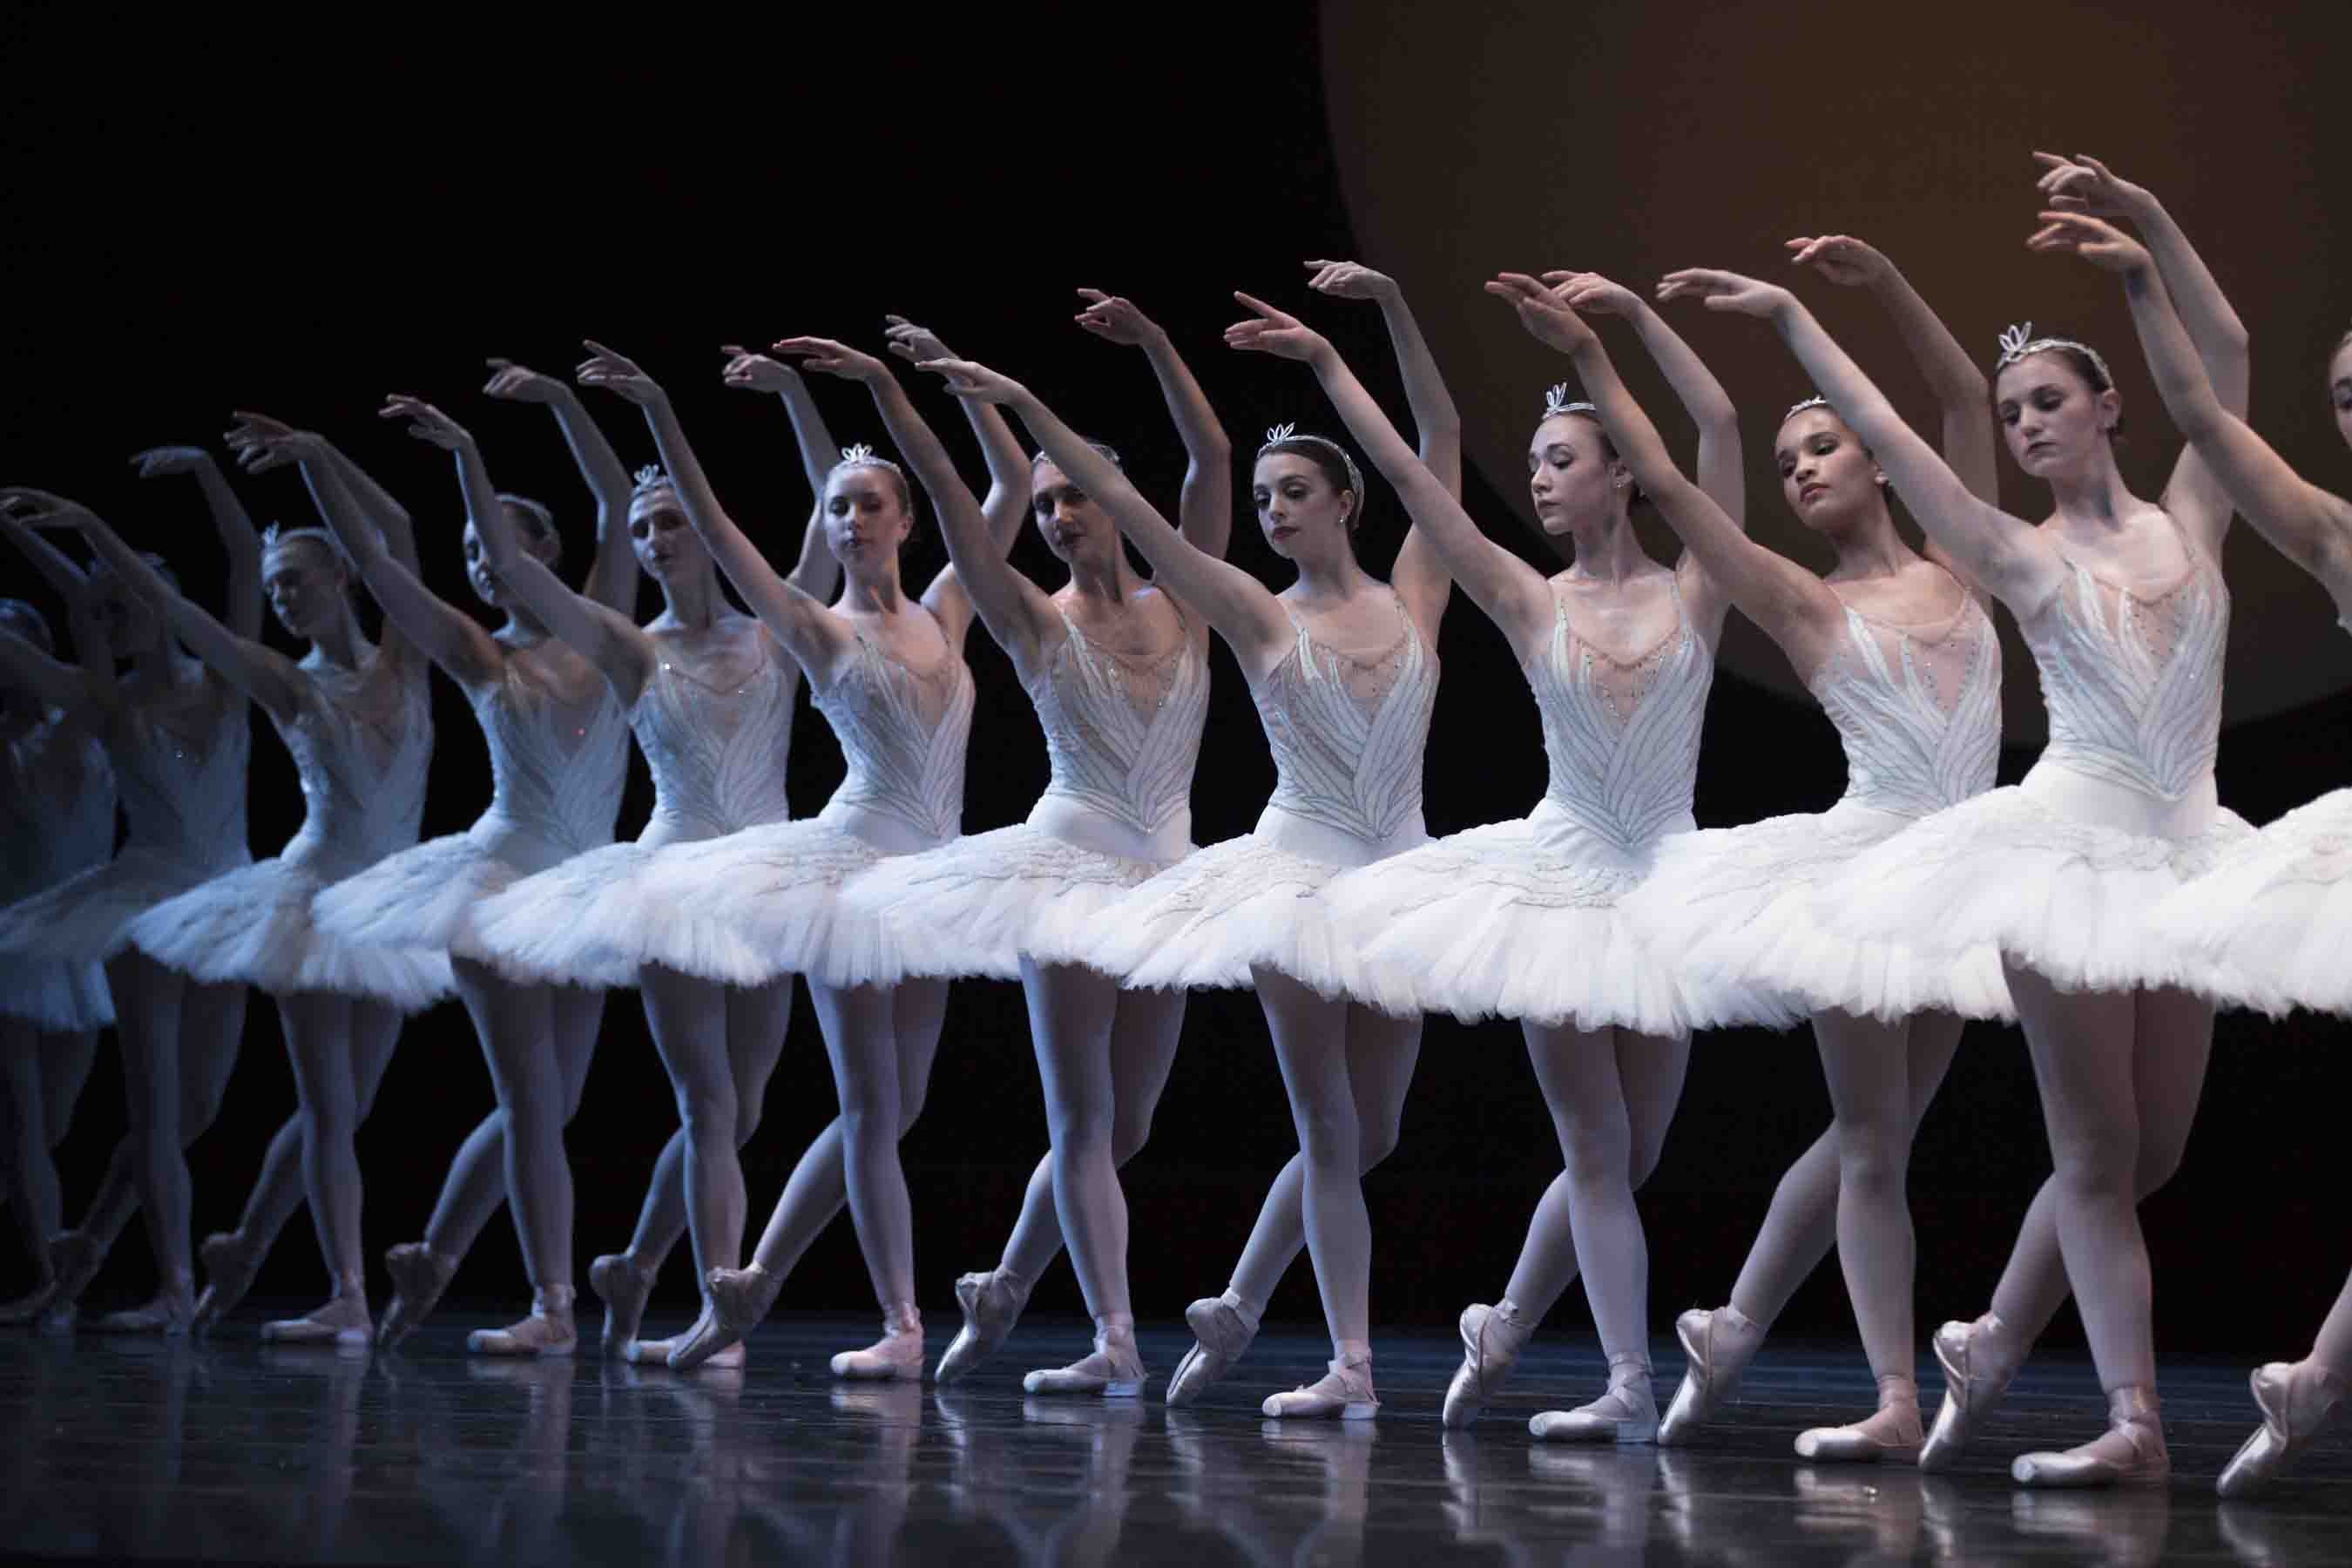 Ballet: Ballerinas, En pointe, Classical dance moves. 2700x1800 HD Wallpaper.